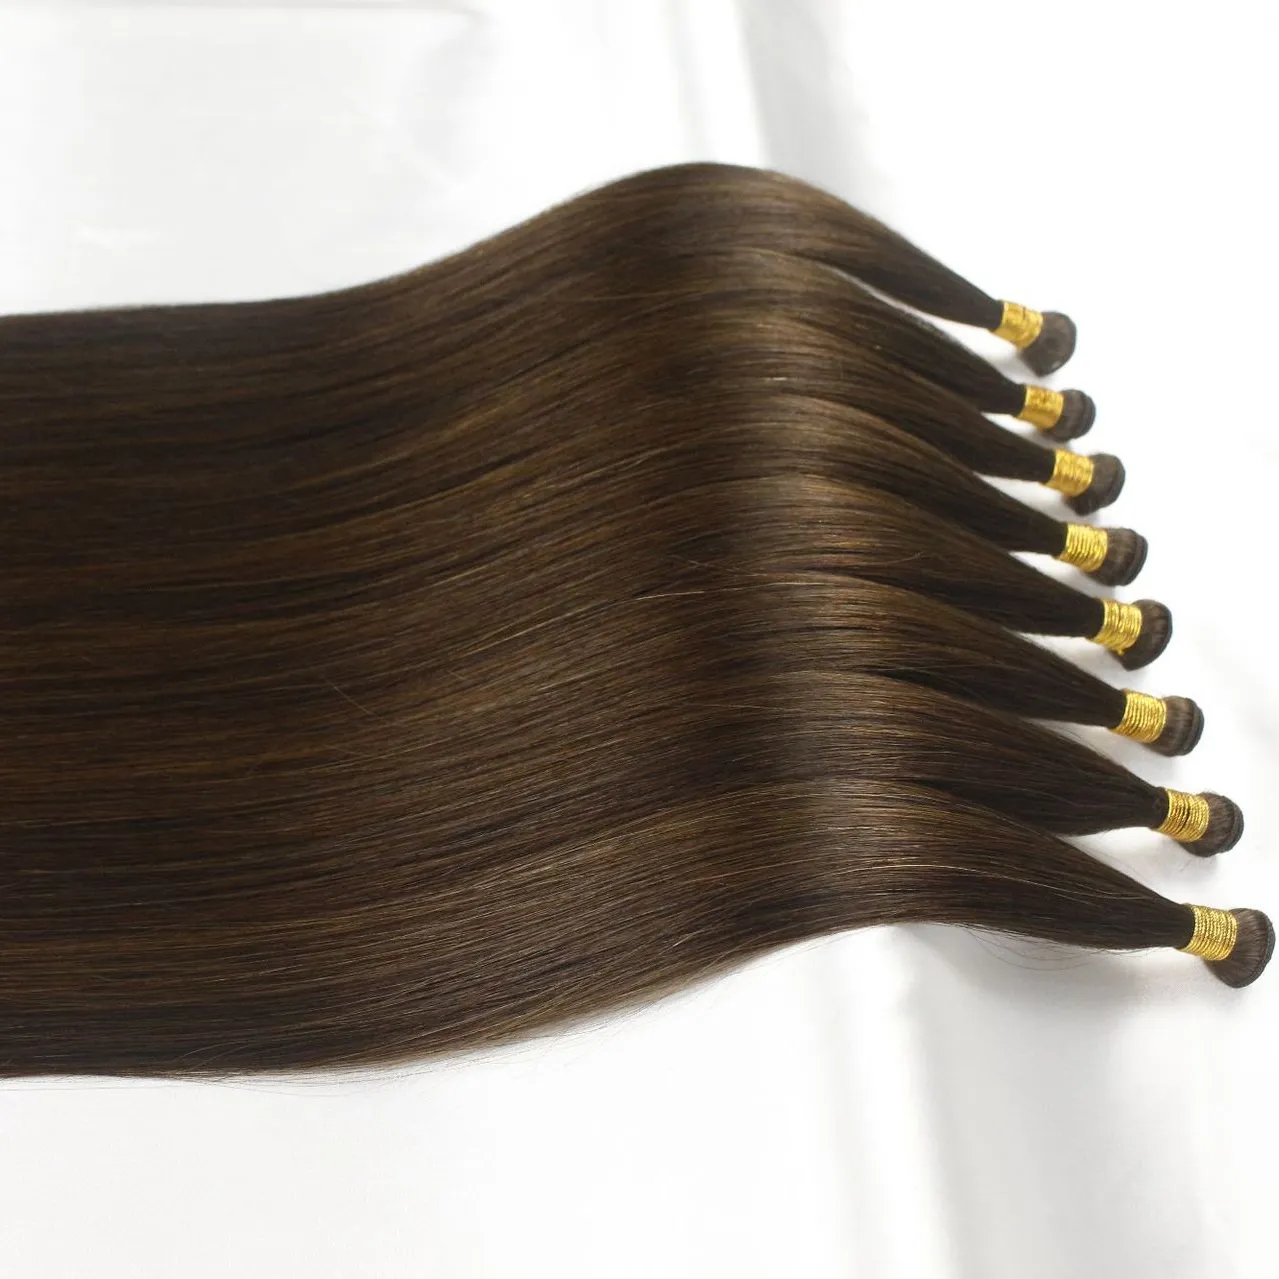 Extensions de cheveux humains russes vierges à cuticules alignées 100%, trame Invisible attachée à la main, couleur naturelle, trame Genius